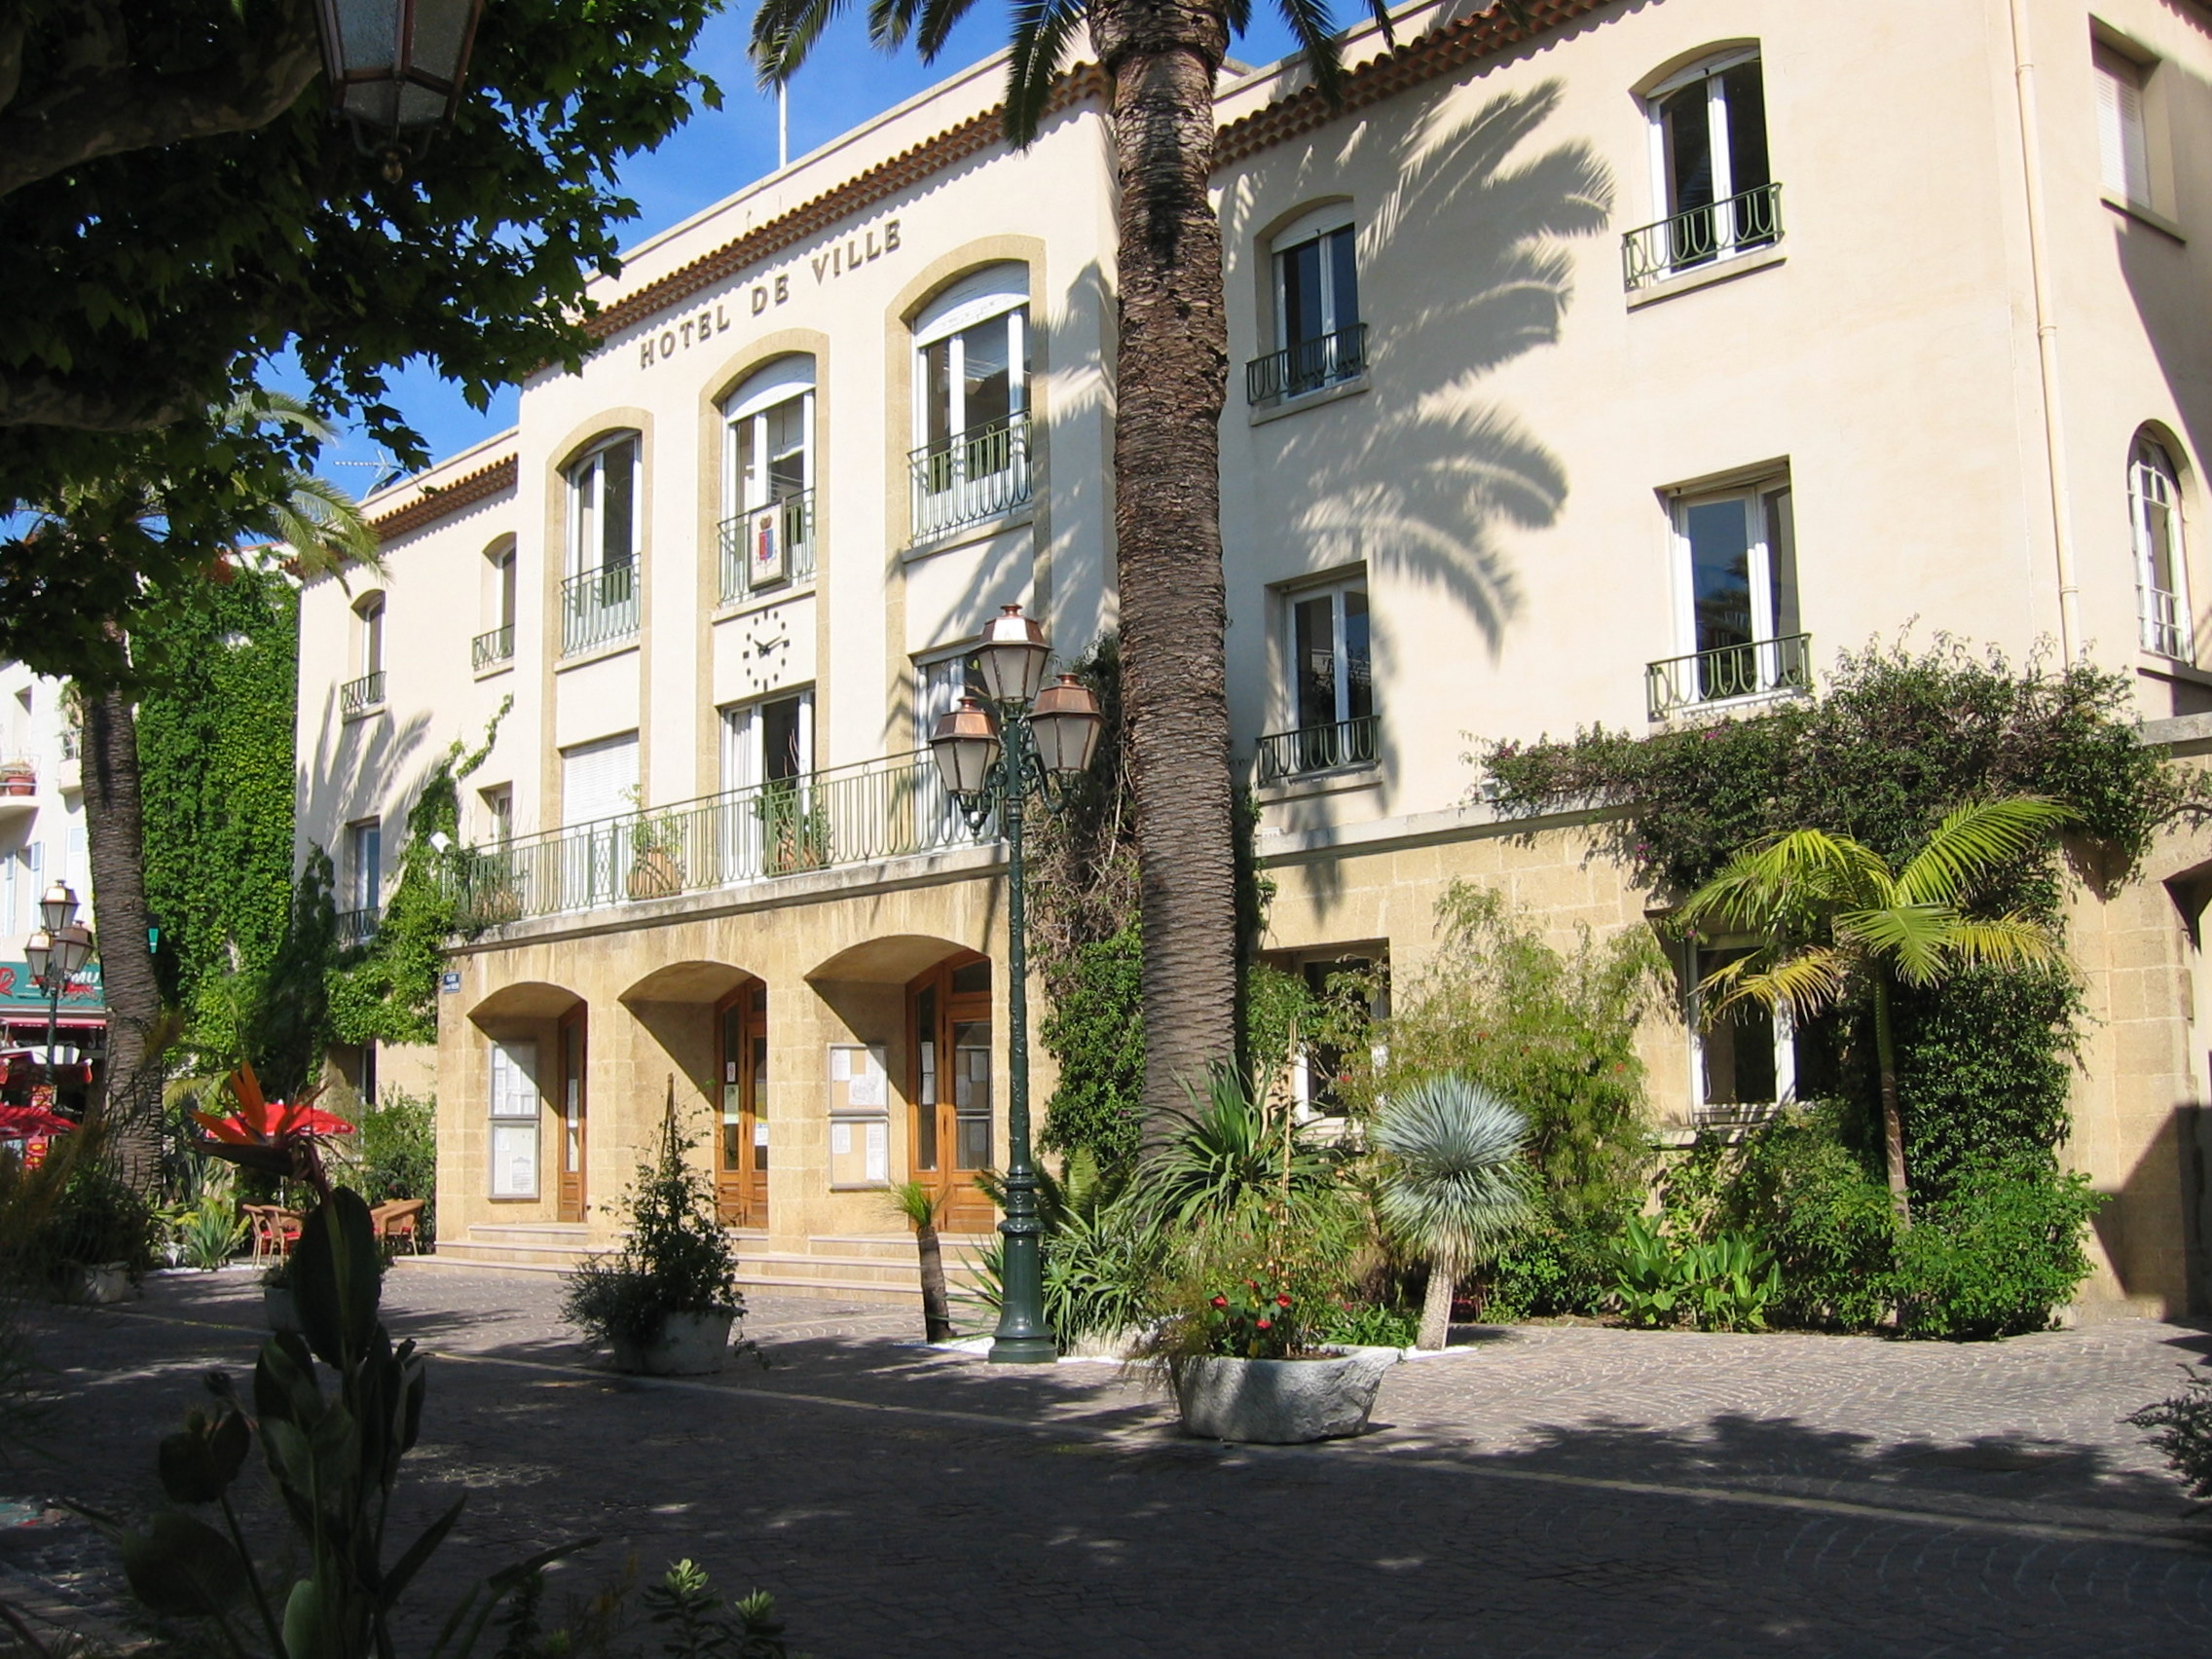 Le Lavandou site officiel - Mairie du Var